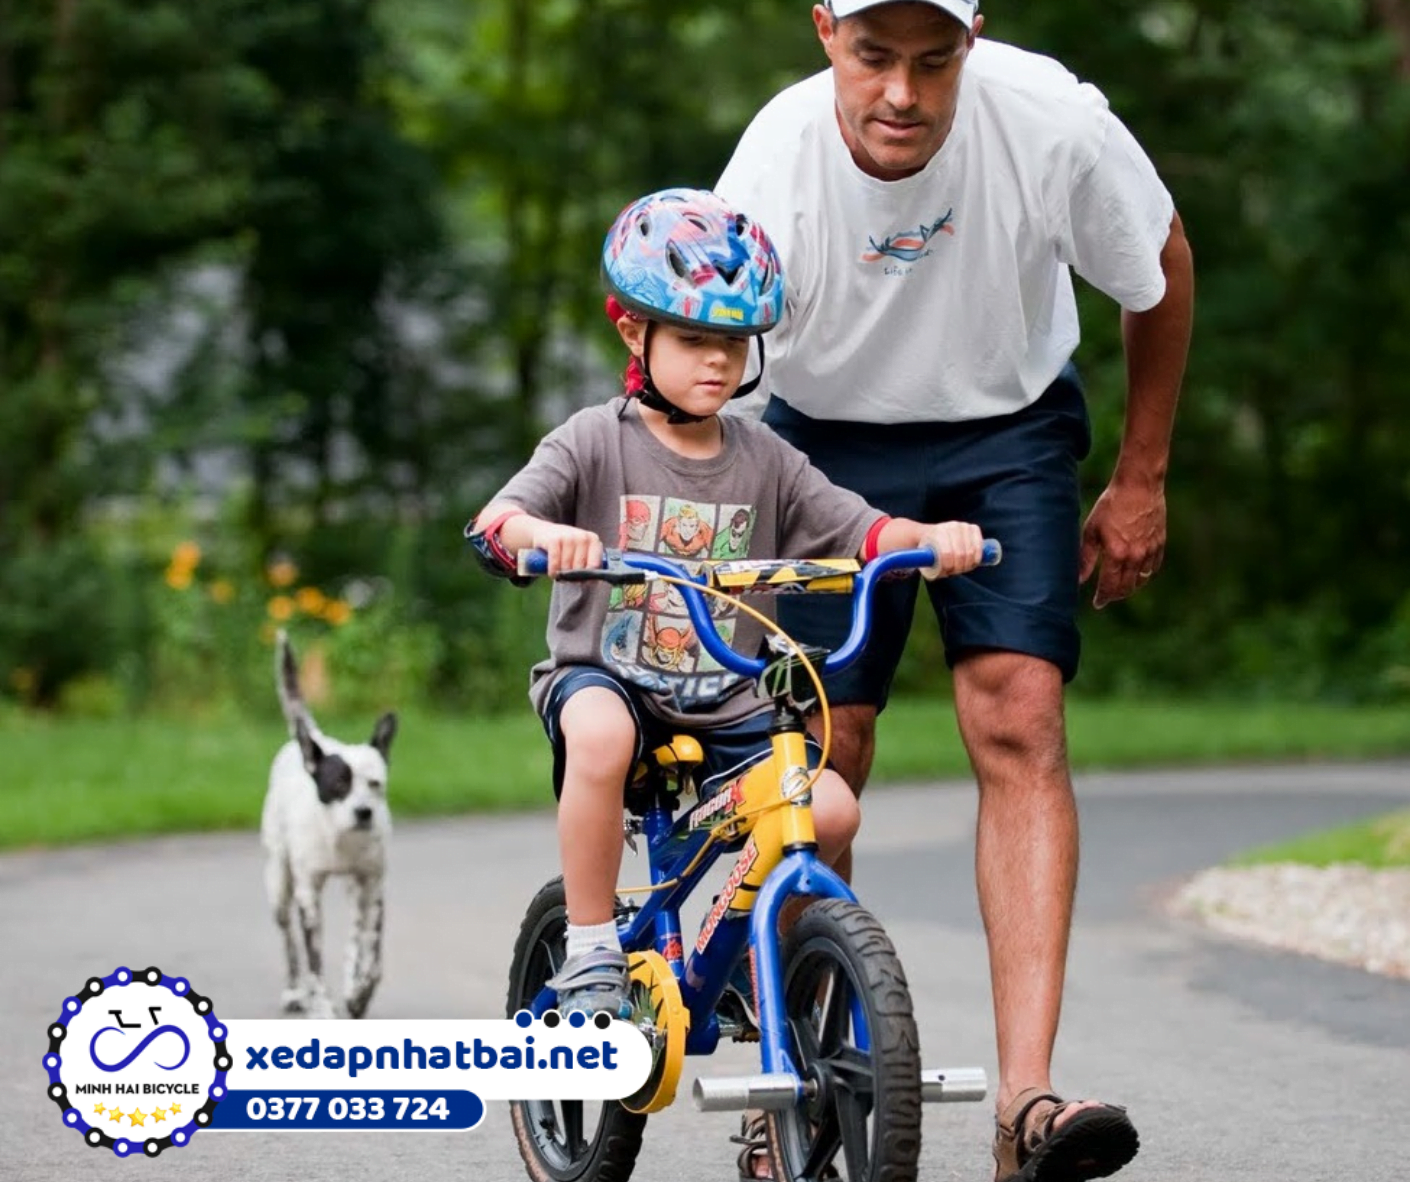 Cách dạy bé đi xe đạp 2 bánh cho trẻ an toàn nhất là bạn luôn giữ hờ ở phía sau